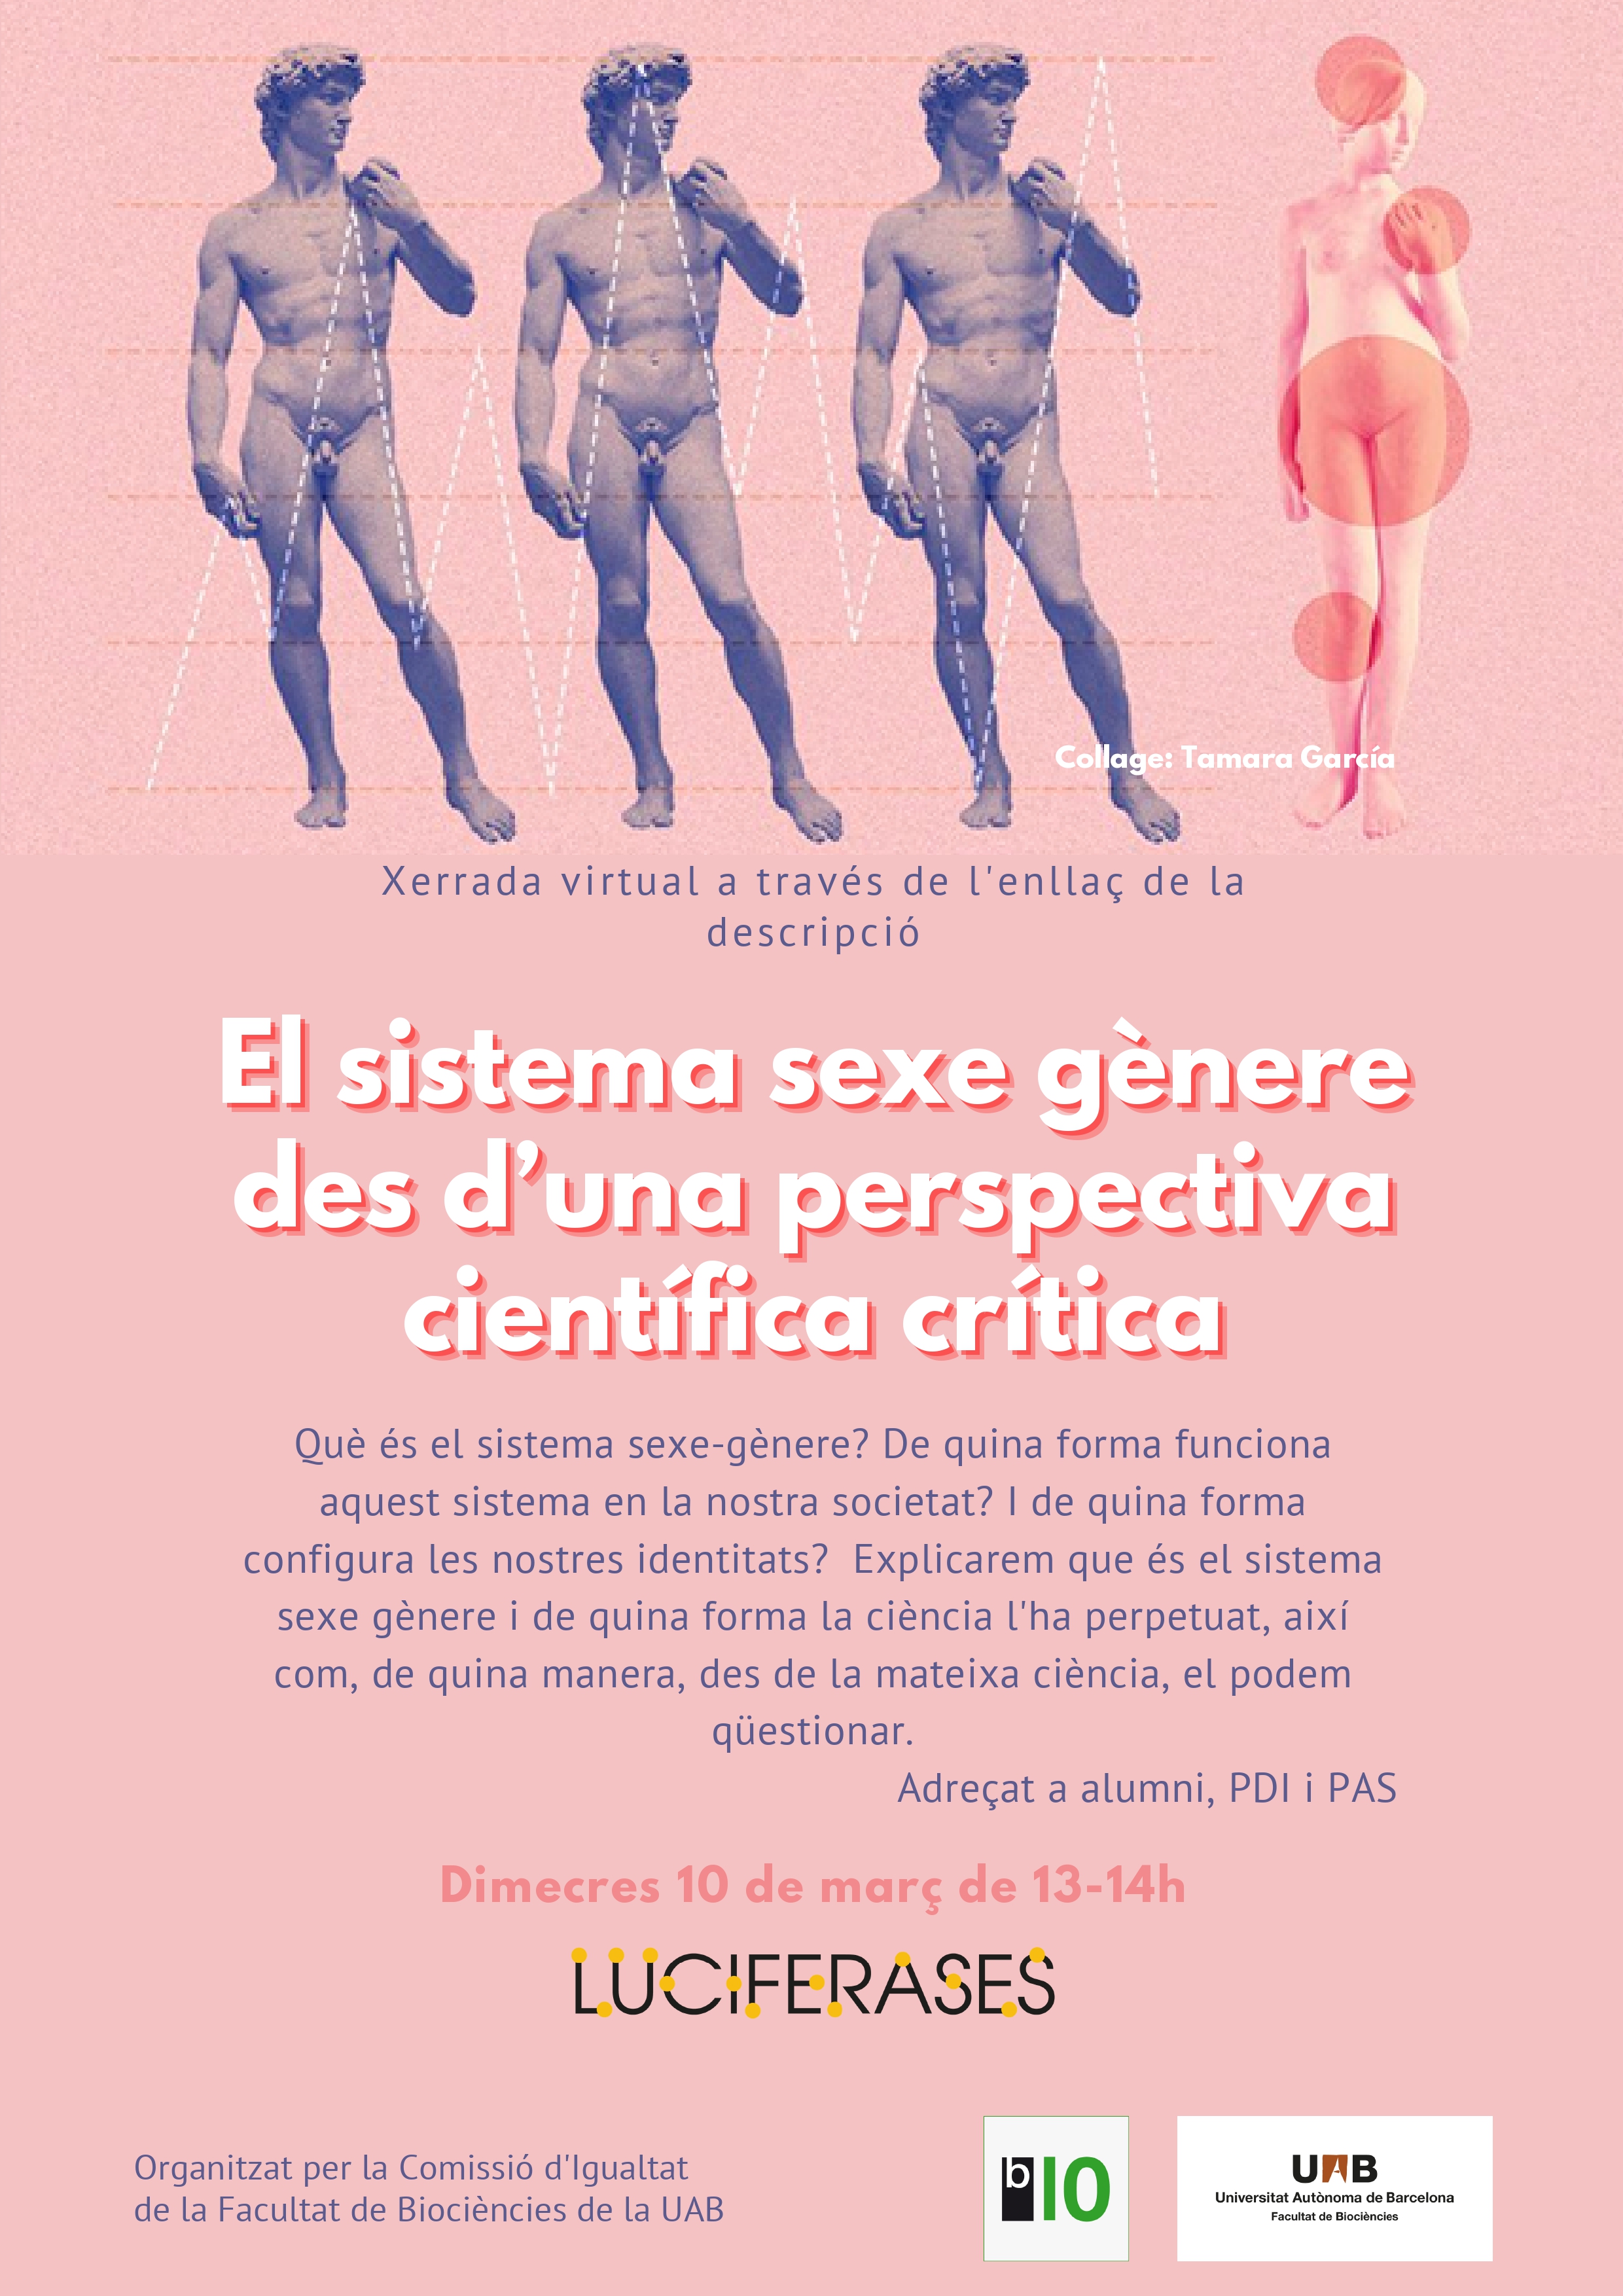 Cartell xerrada virtual "El sistema sexe gènere des d'una perspectiva científica crítica"